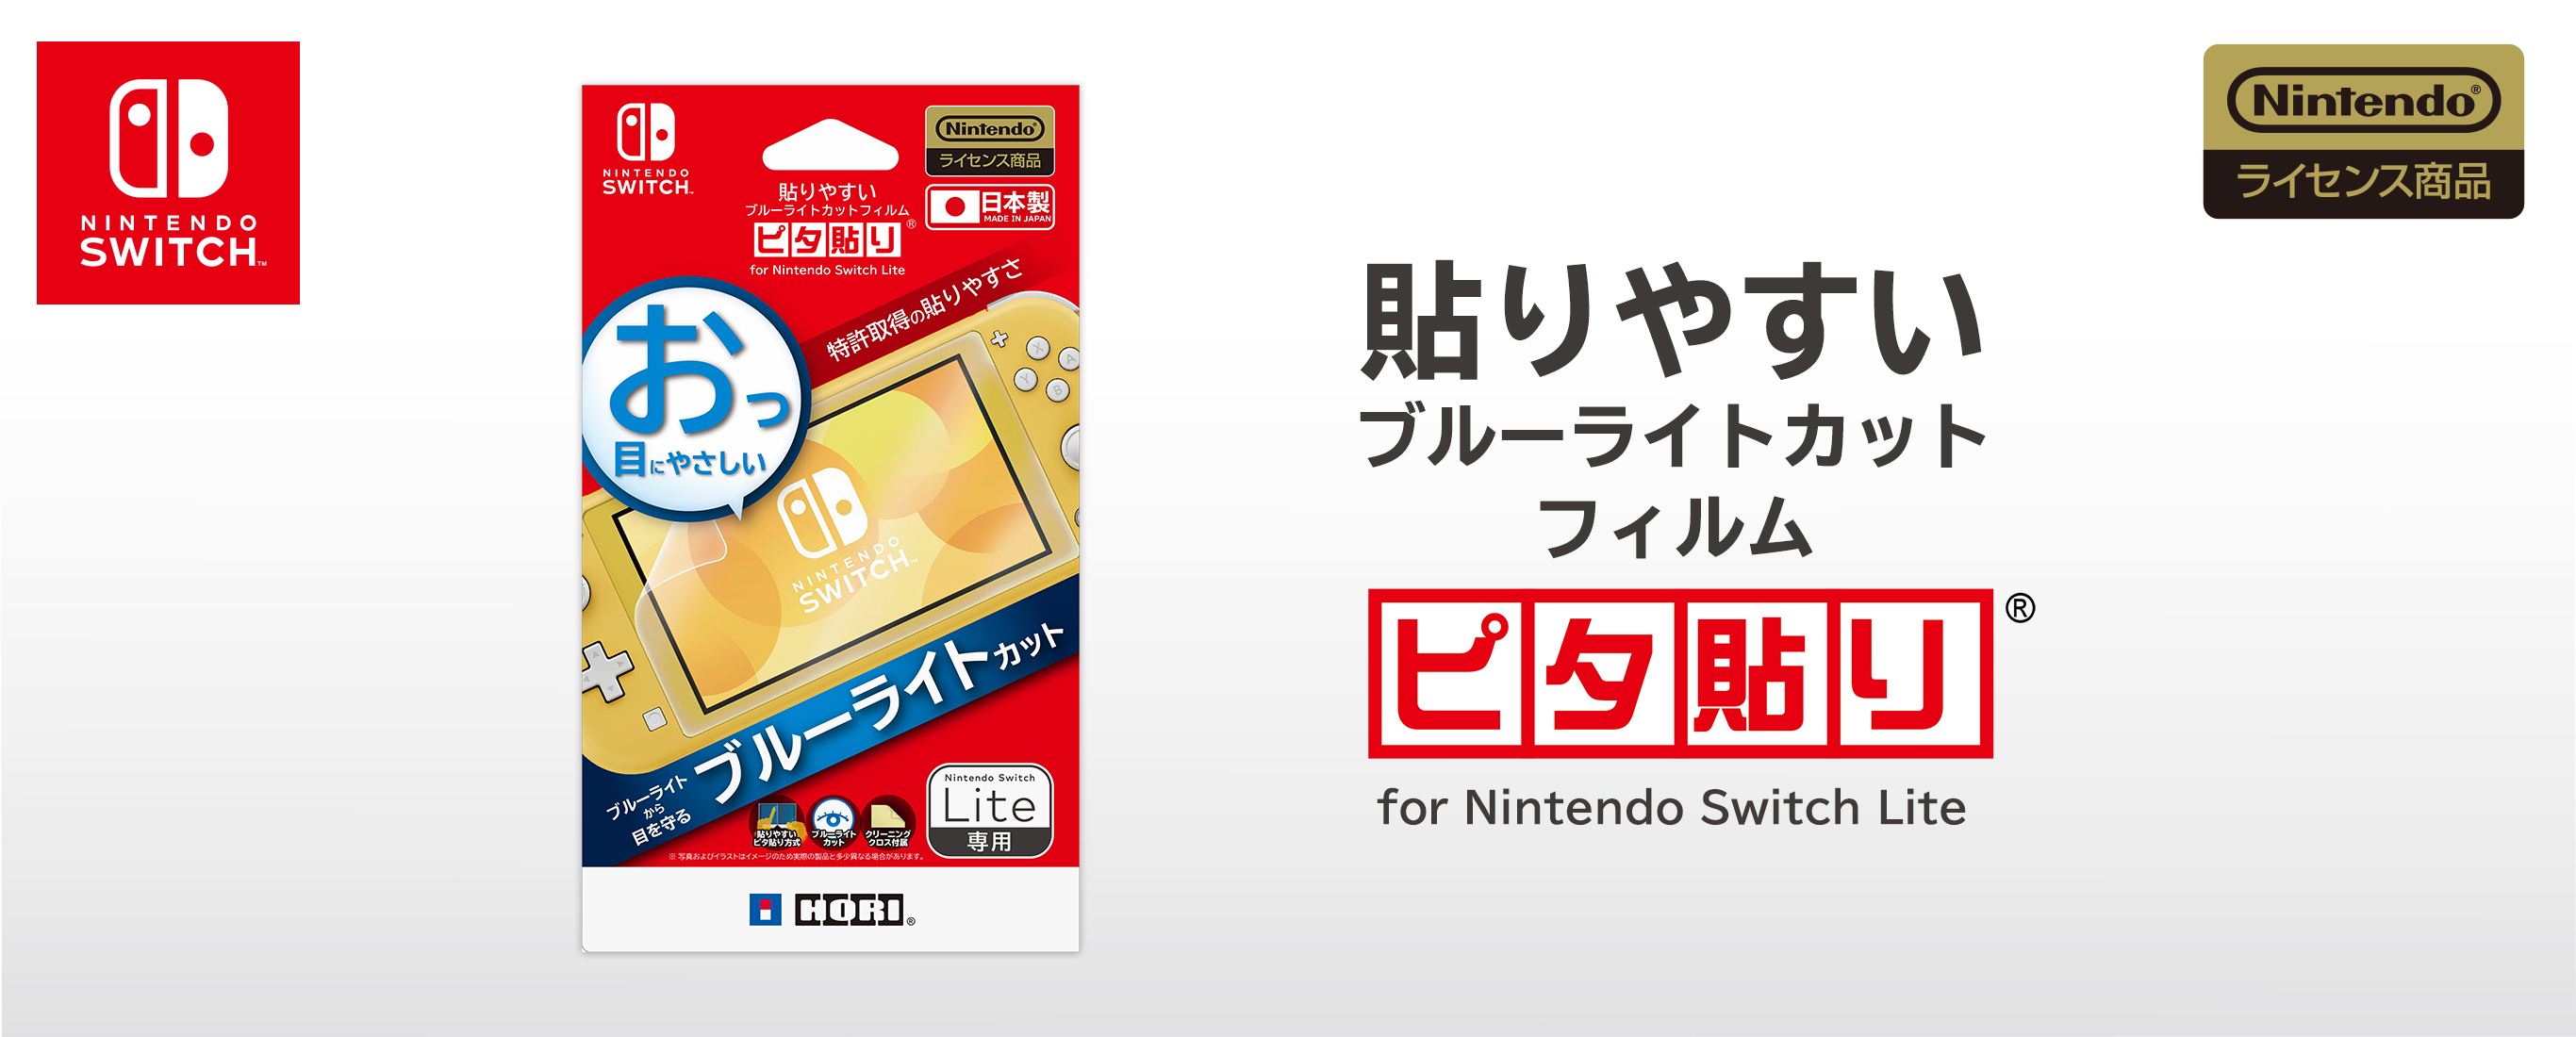 株式会社 Hori 貼りやすいブルーライトカットフィルム ピタ貼り For Nintendo Switch Lite